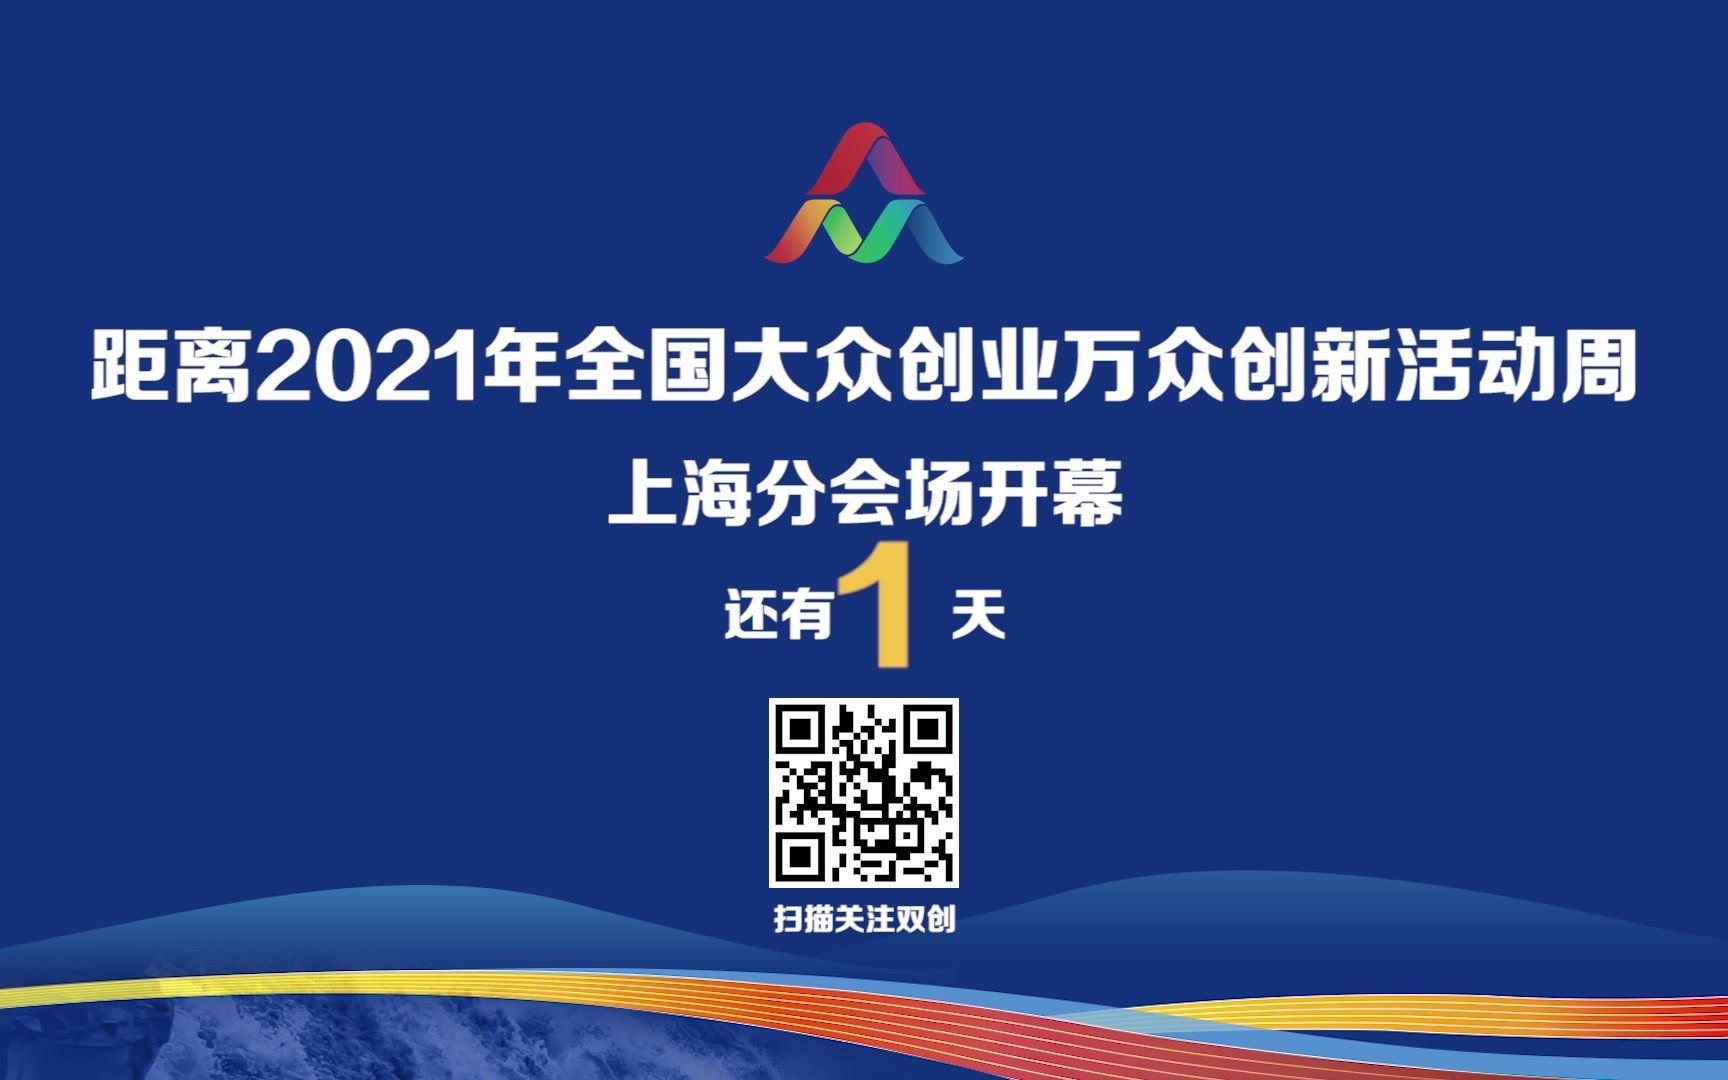 2021年全国大众创业万众创新活动周上海分会场即将开幕